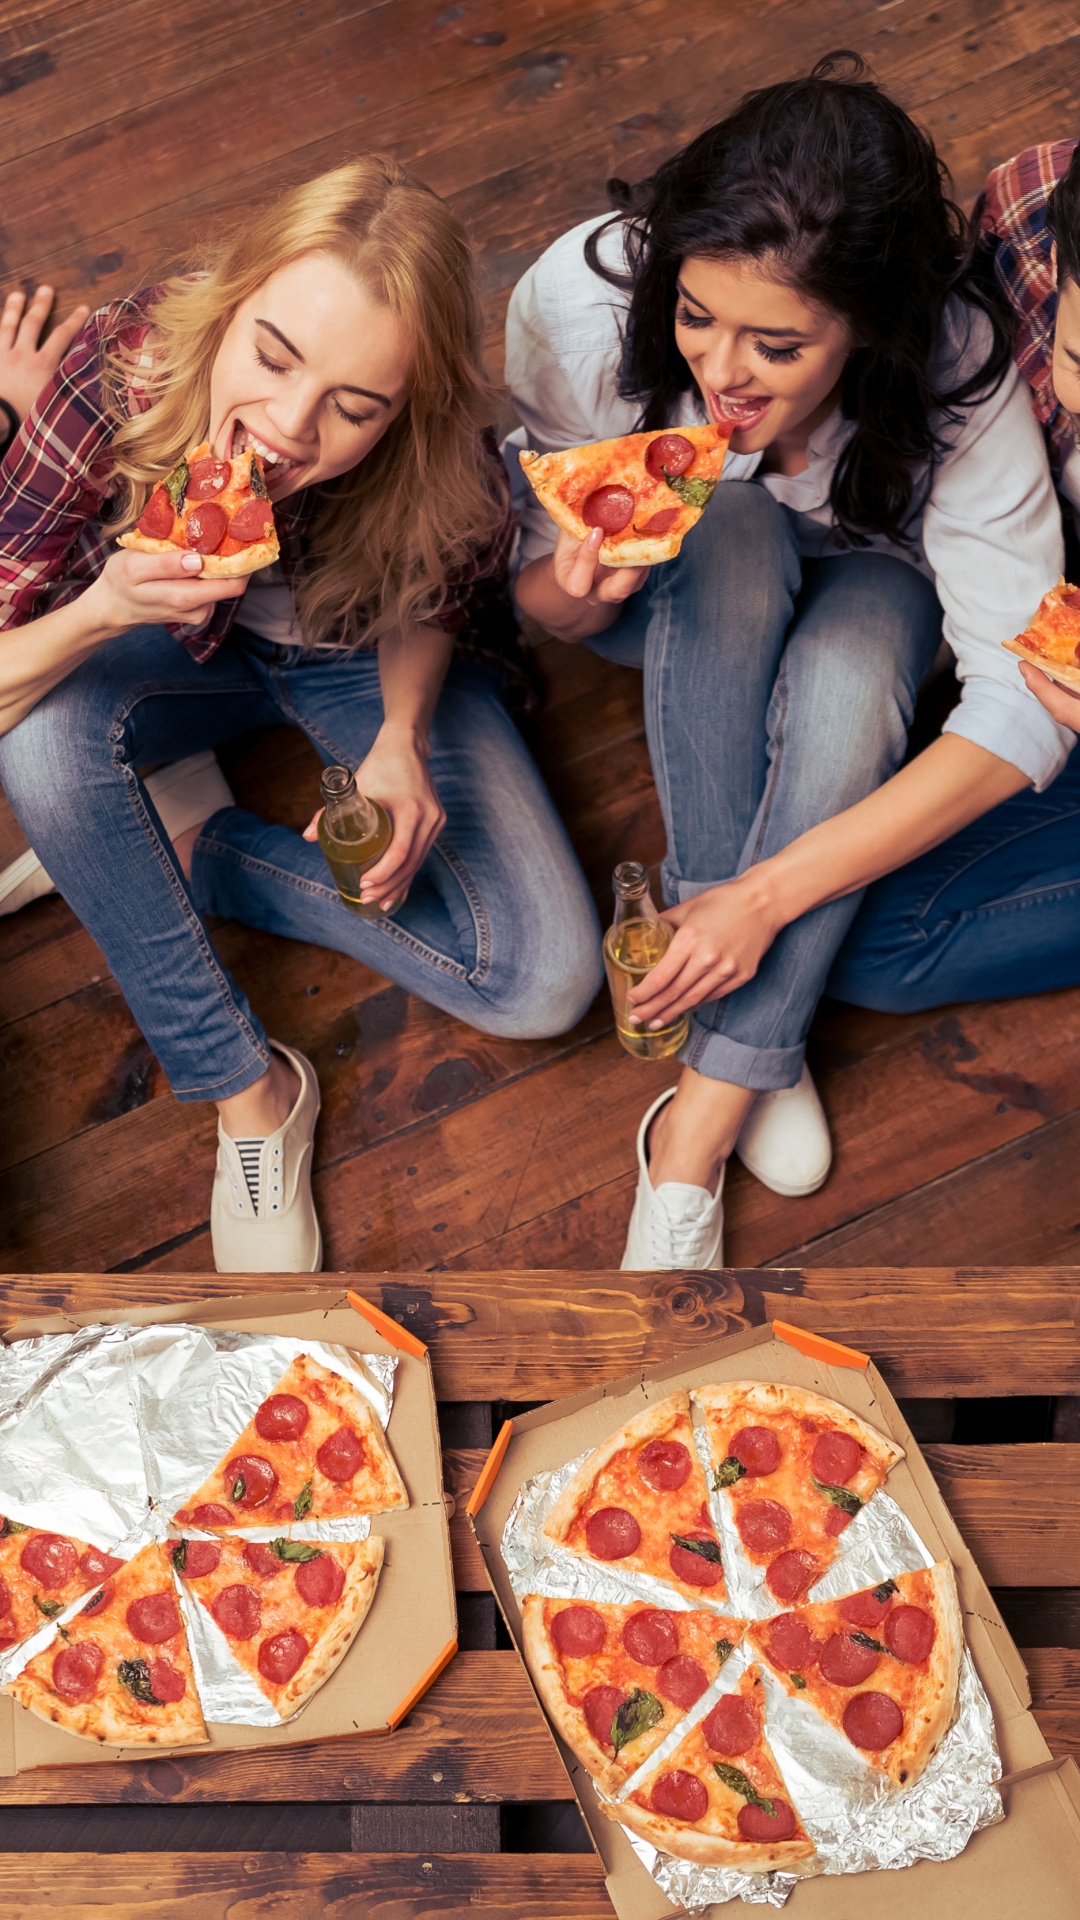 披萨, 意大利菜, 吃, 乐趣, 食品 壁纸 1080x1920 允许